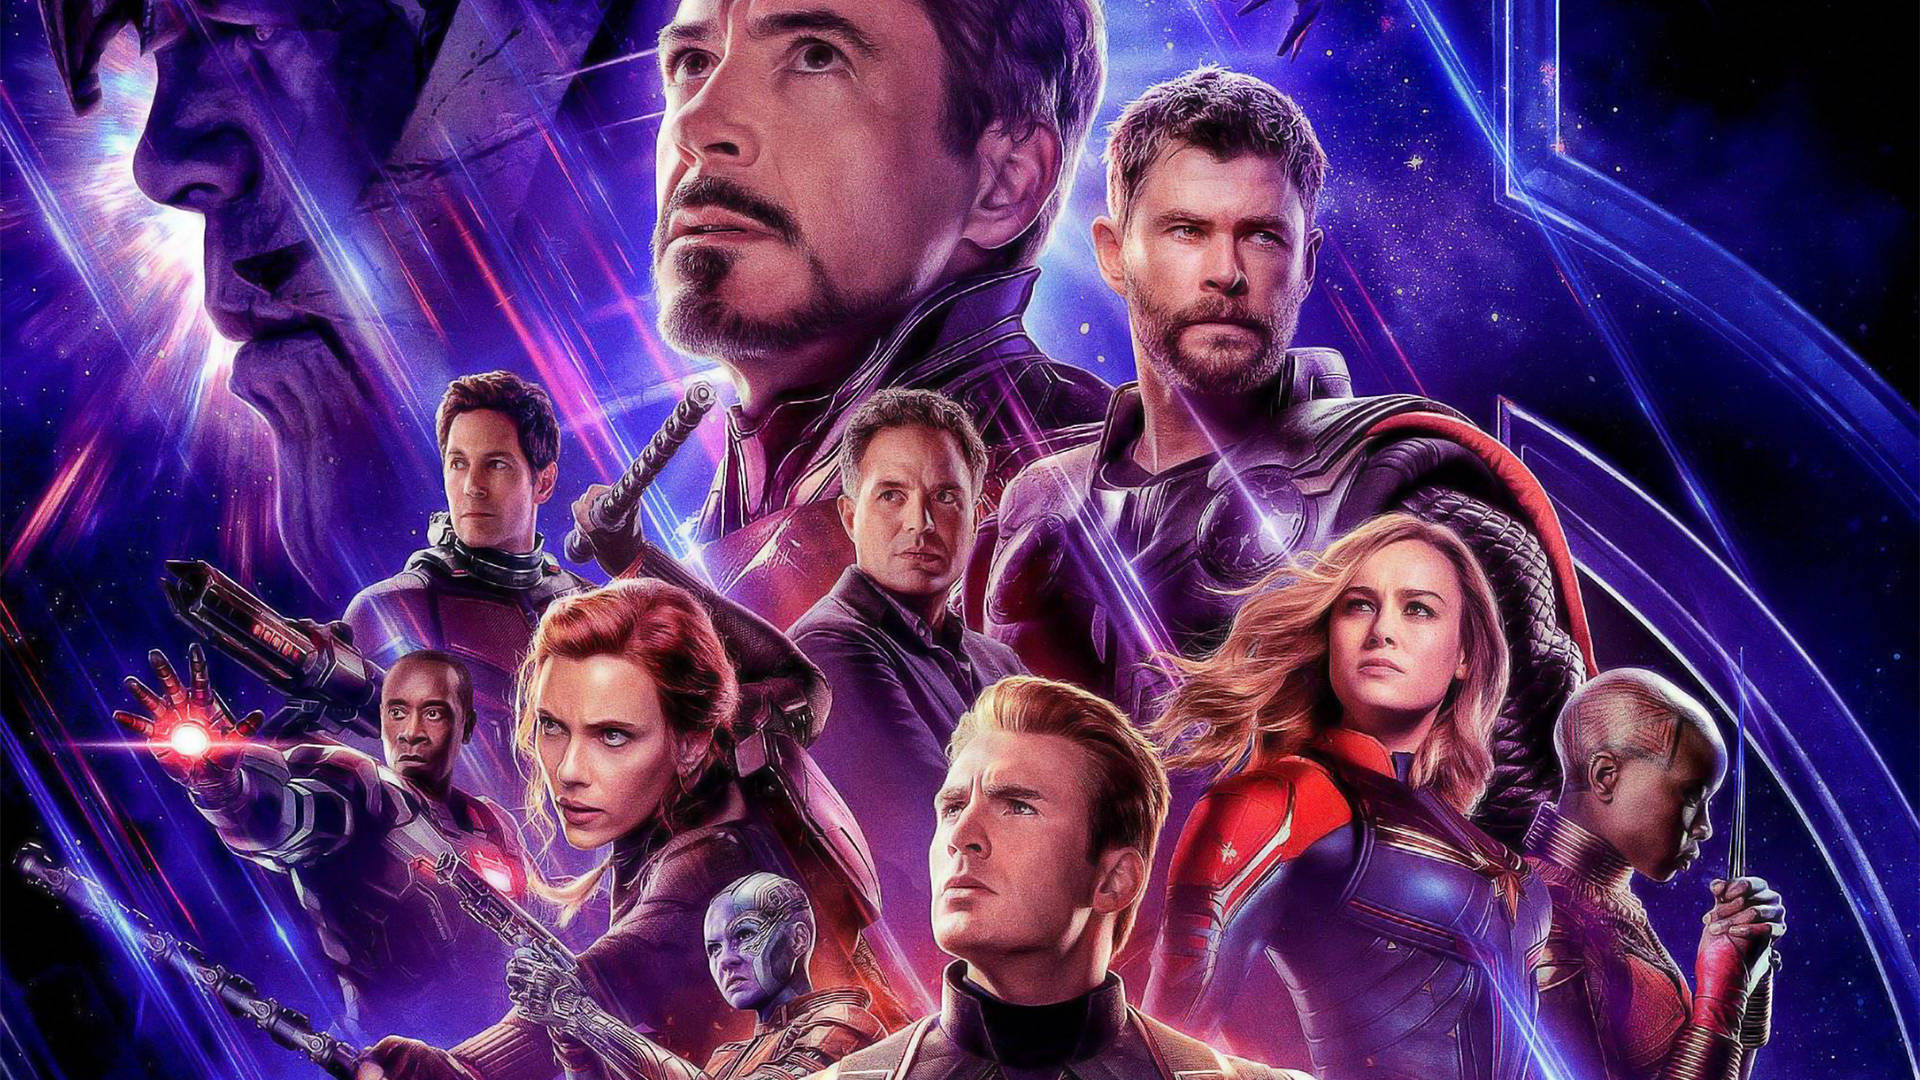 4k Avengers Infinity War Poster